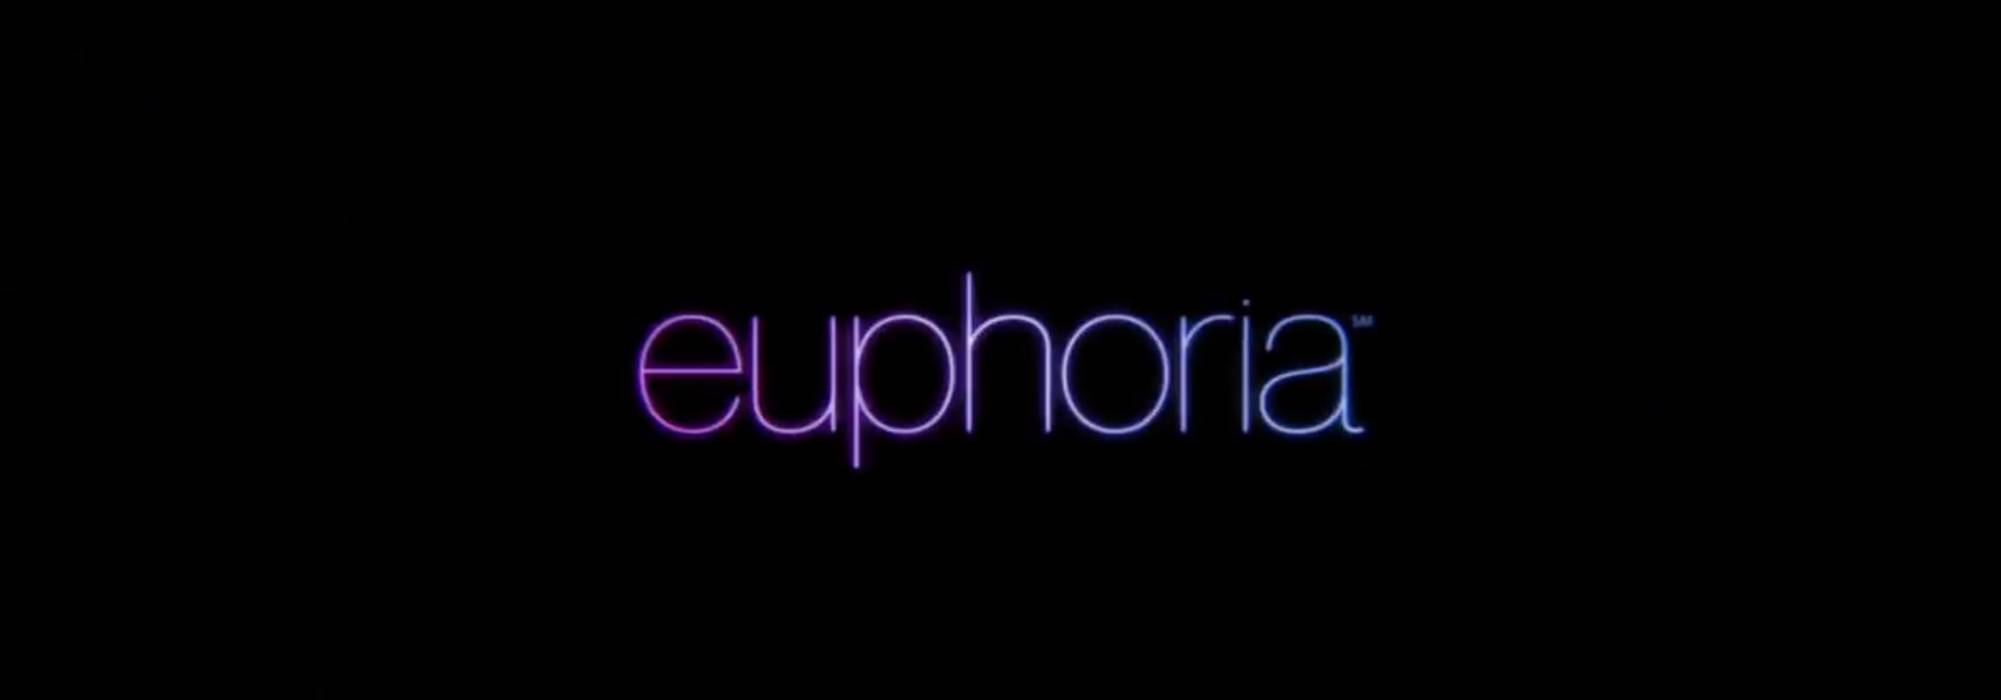 Su Sky Atlantic arriva 'Euphoria': trama e cast dell'attesissima serie tv